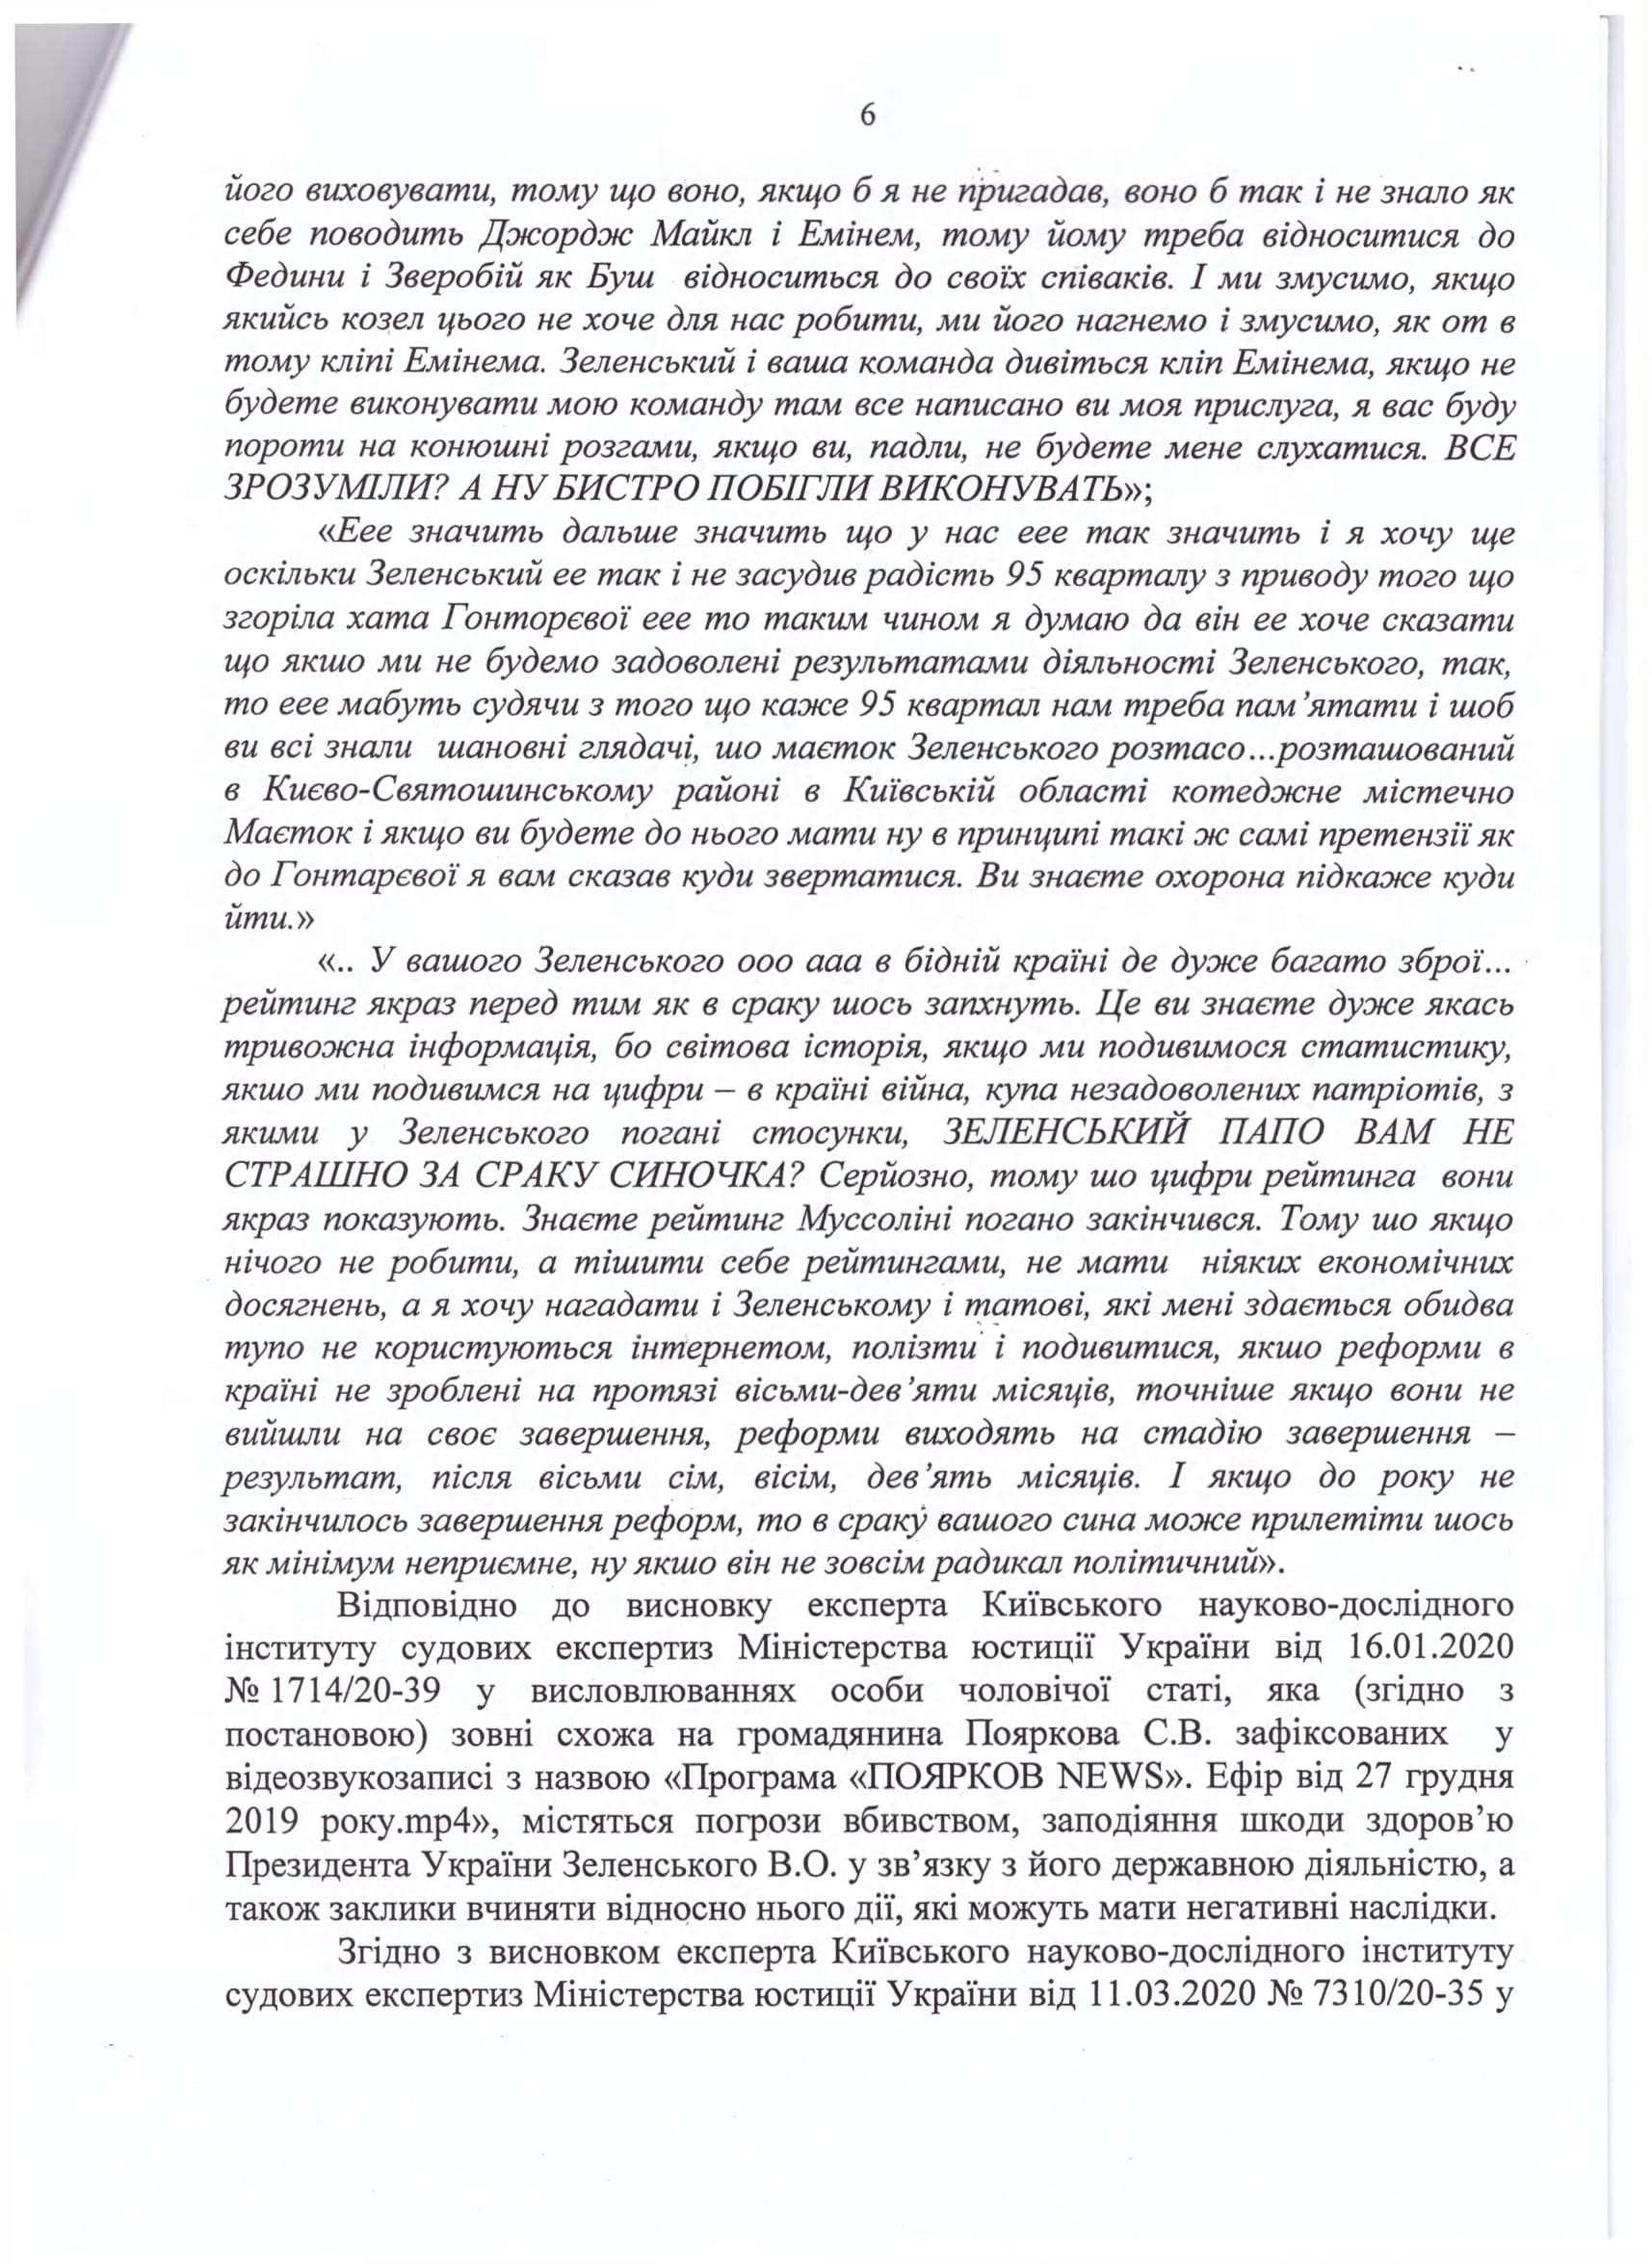 СМИ опубликовали обвинительный акт Пояркову за угрозы Зеленскому - 6 - изображение